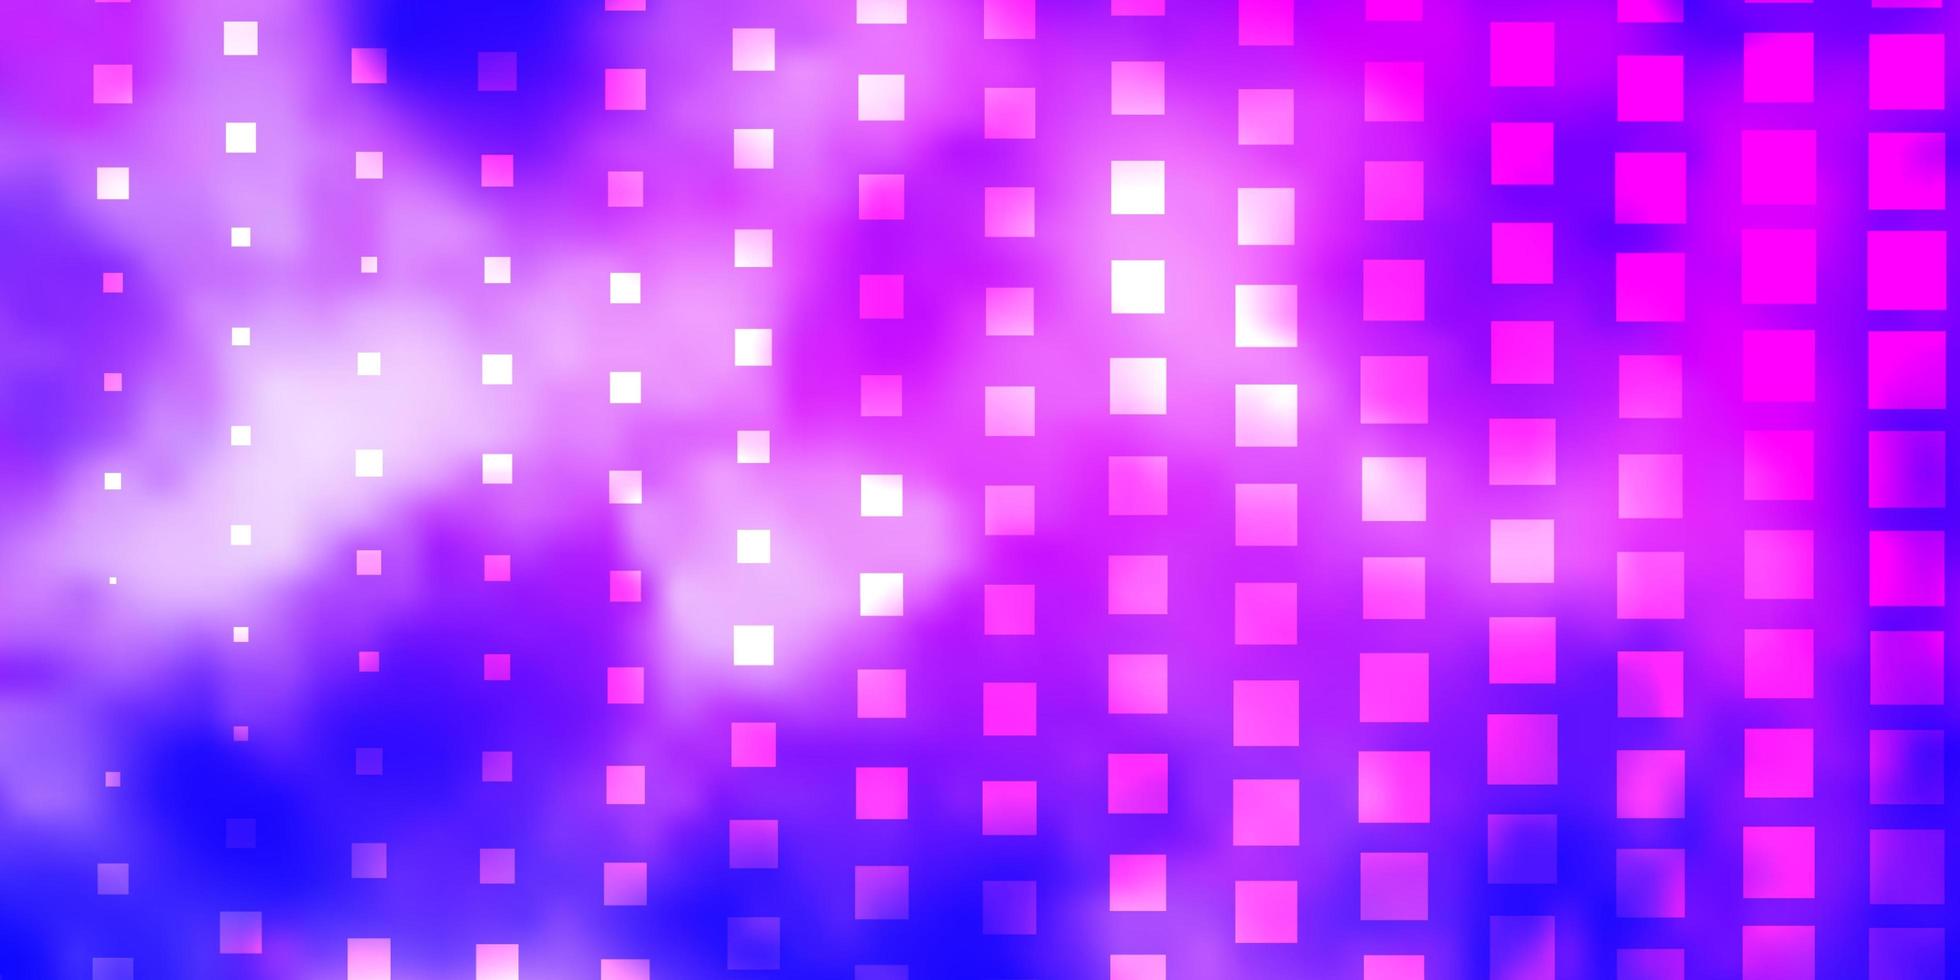 Fondo de vector rosa claro, azul con rectángulos.